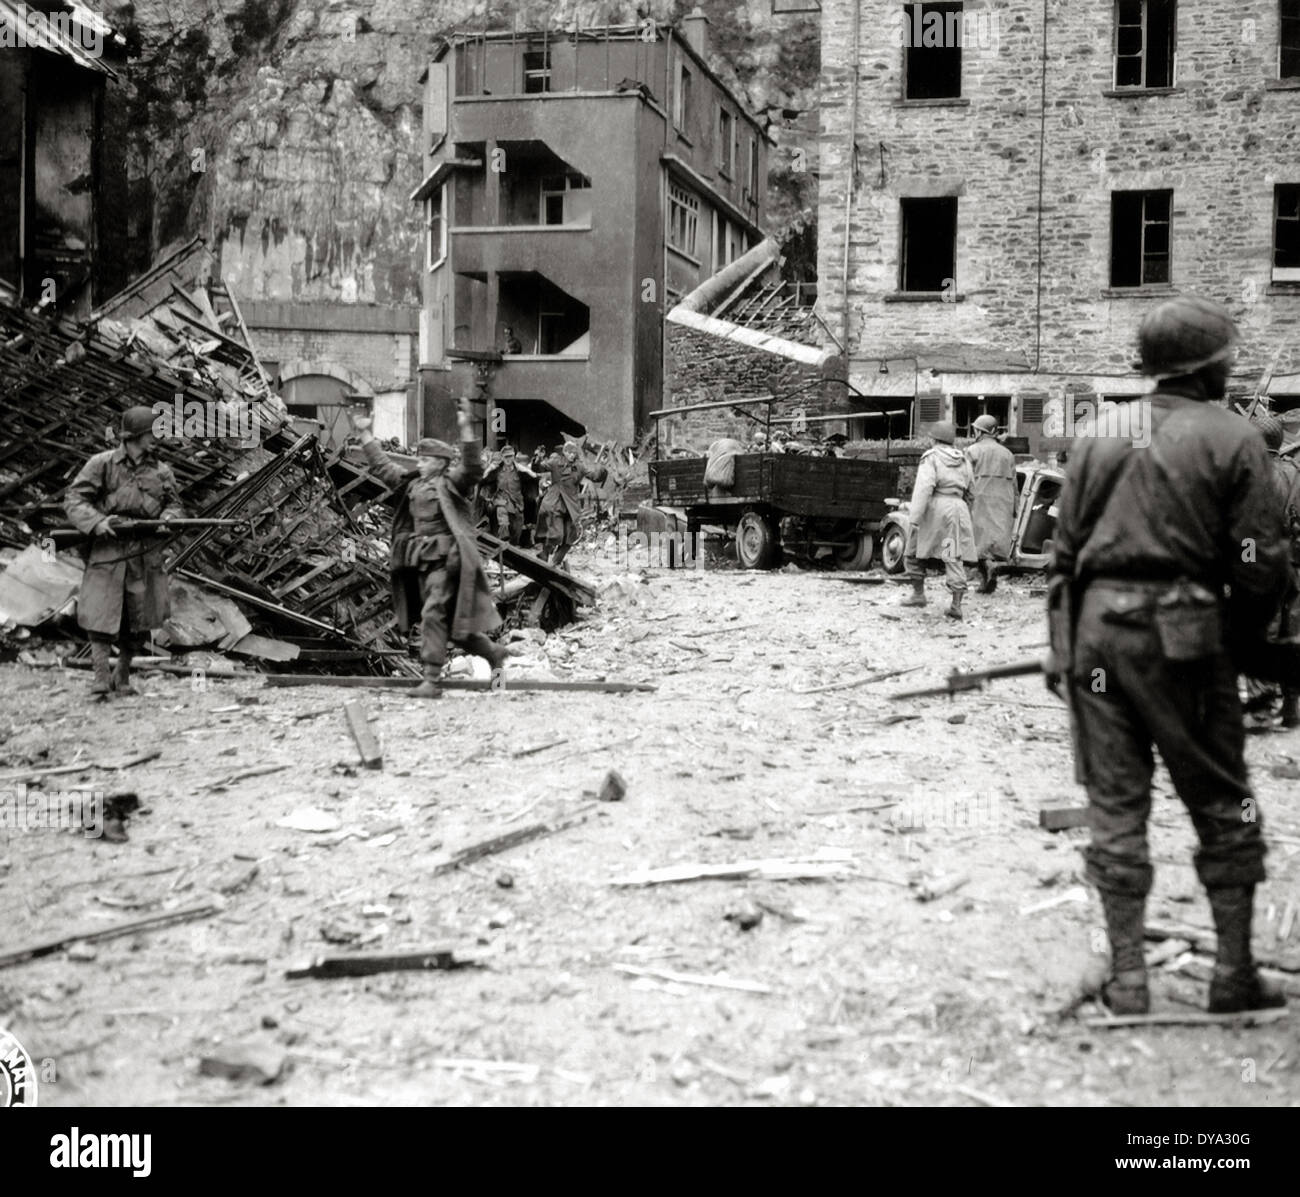 Historique de la Deuxième Guerre mondiale Seconde Guerre mondiale Guerre mondiale Seconde Guerre mondiale l'opération Overlord Overlord invasion militaire des soldats allemands nazis prouver Nati Banque D'Images